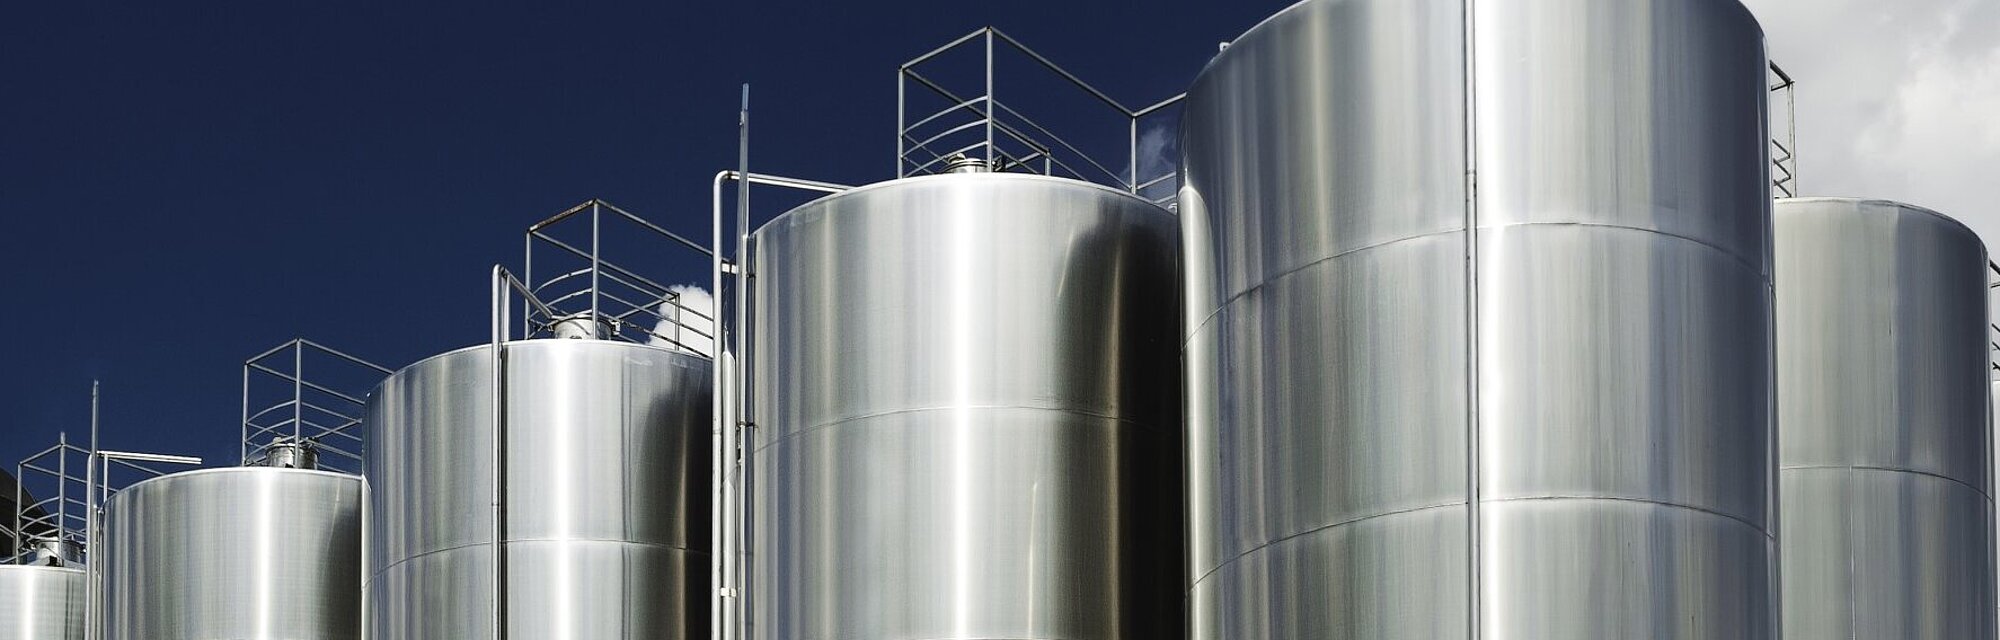 Proteção de tanques para armazenamento de etanol e outros álcoois